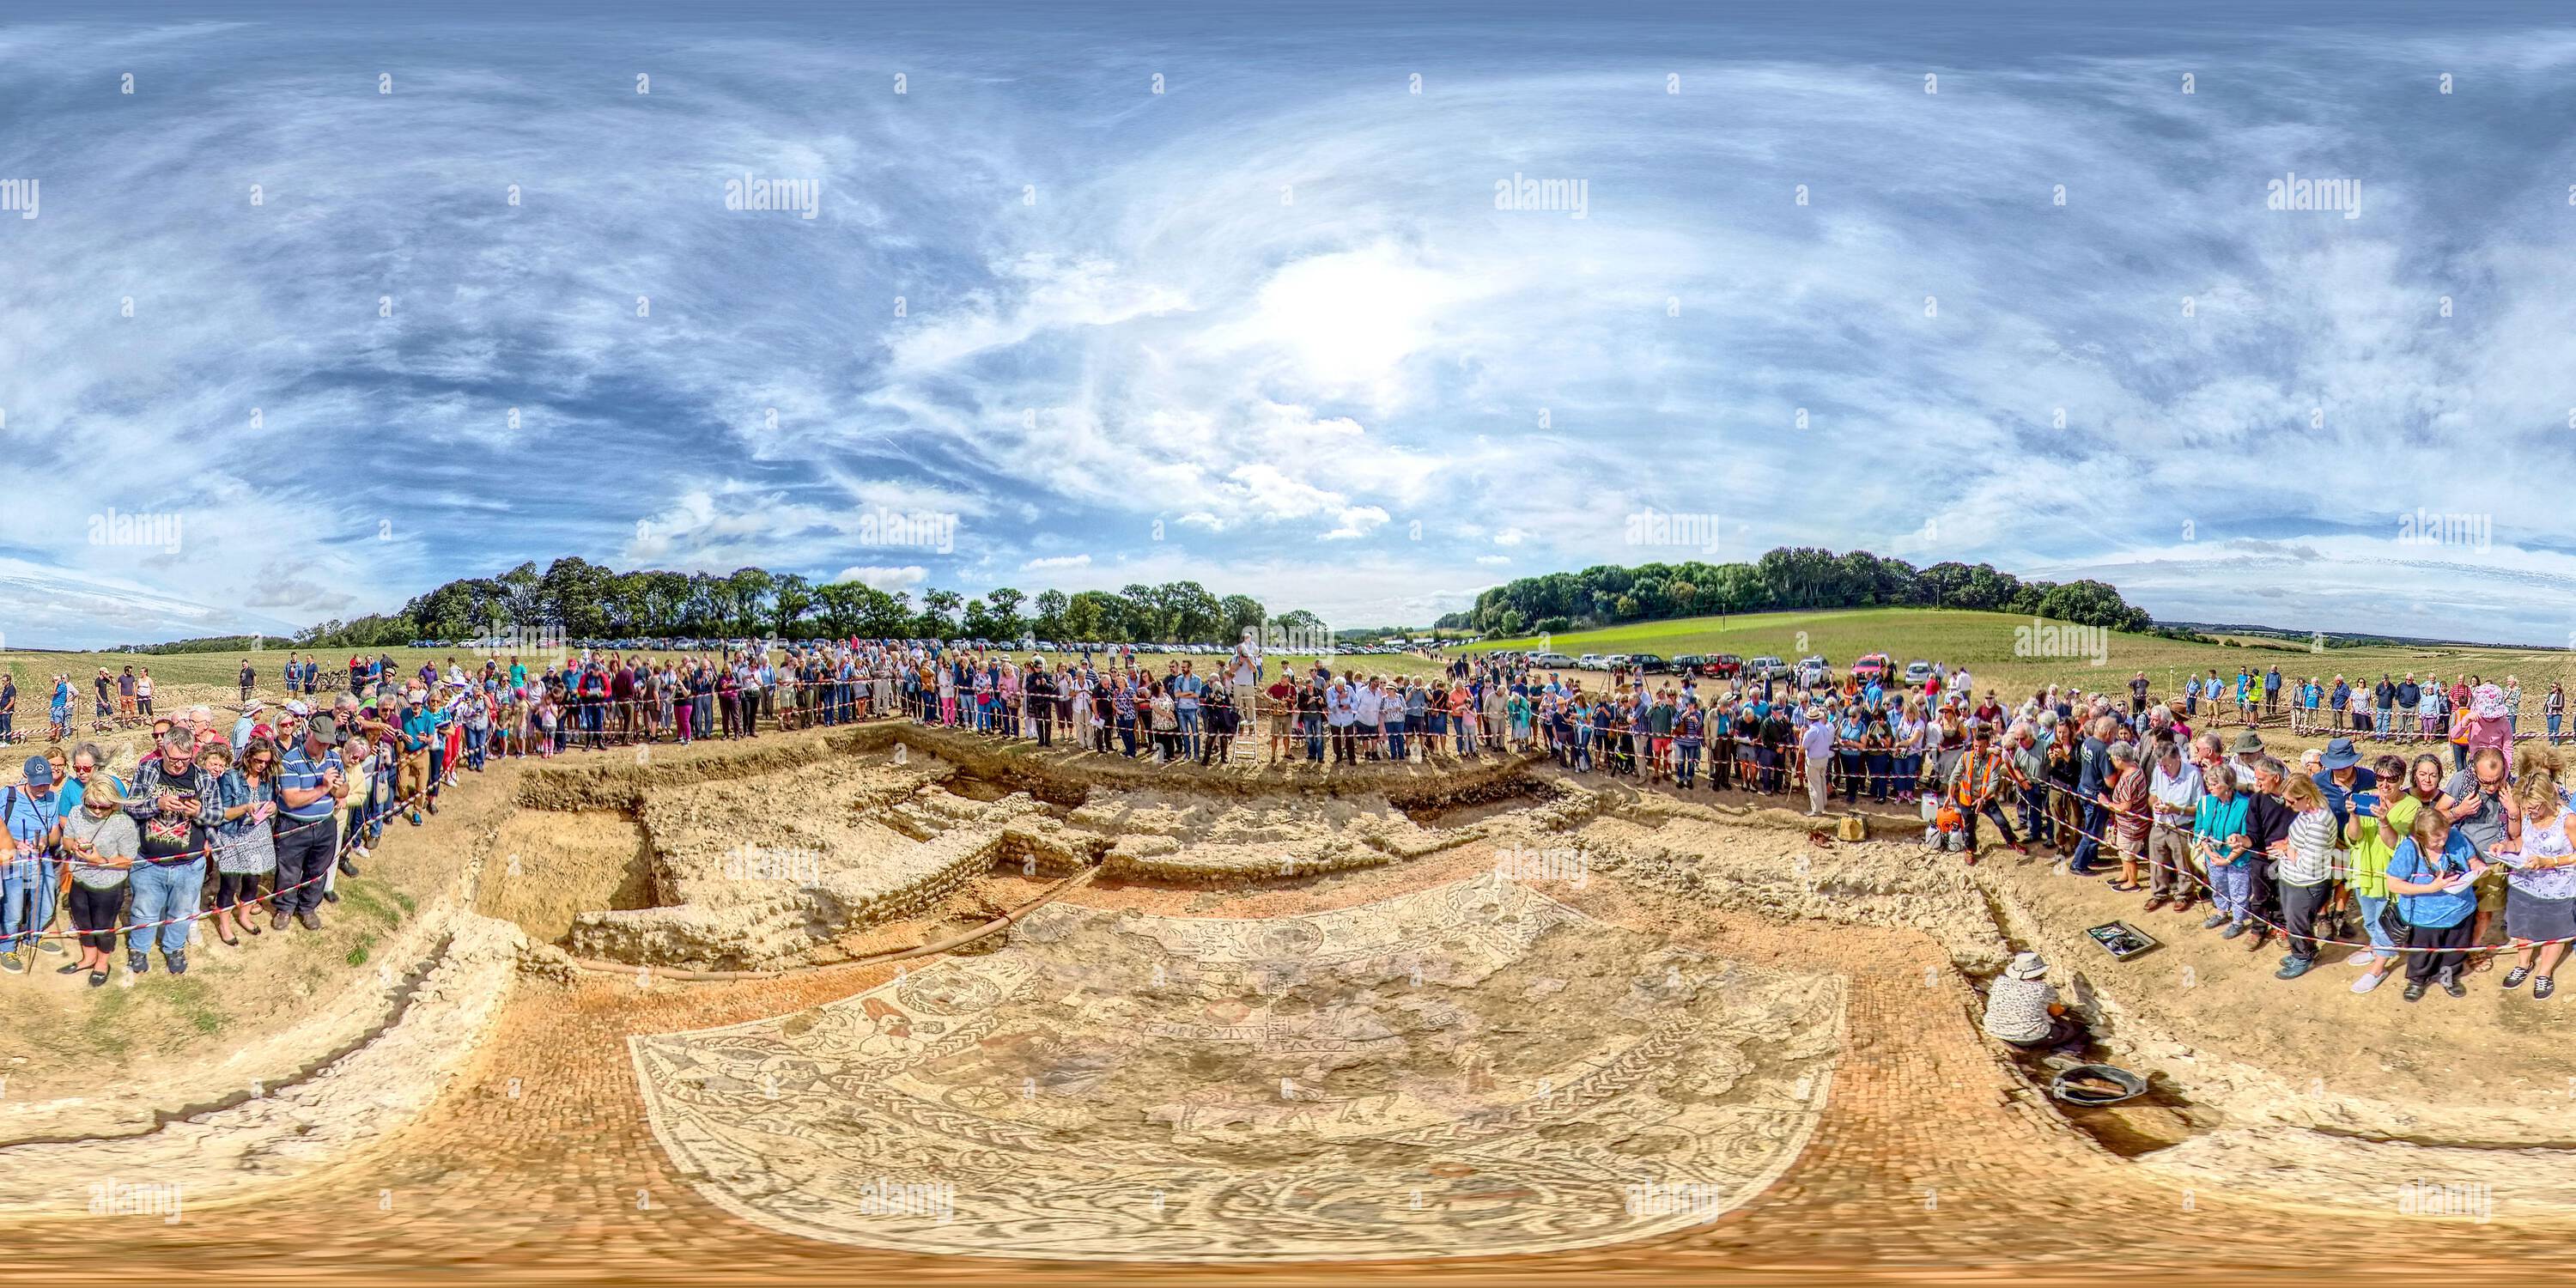 360 Grad Panorama Ansicht von Besucher, die das römische Mosaik Boxford besichtigen, das jetzt zu seinem Schutz wiedergefunden wurde. Entdeckt in West Berkshire, England.